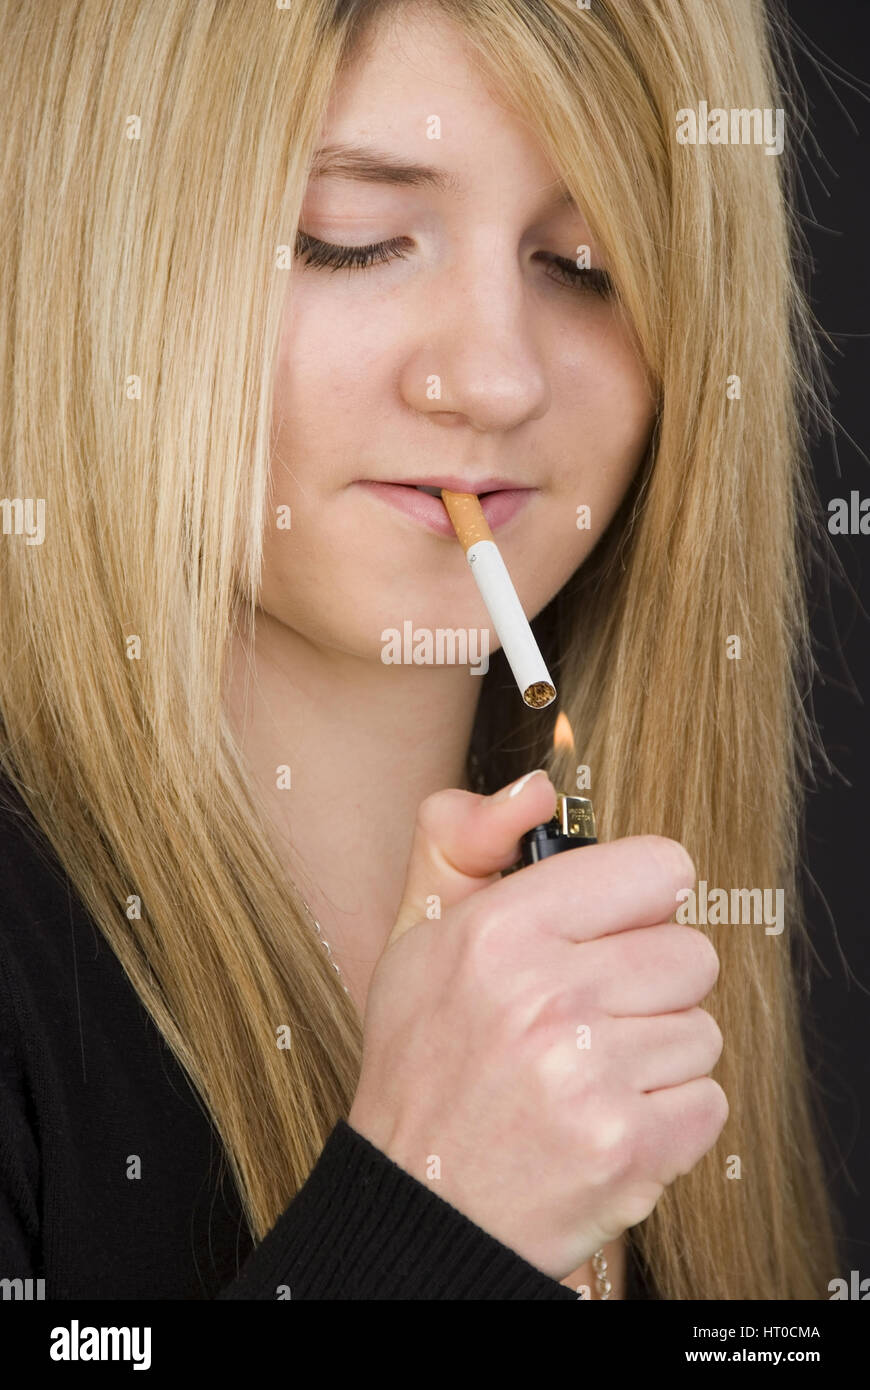 Jugendliches M‰dchen z¸ndet sich eine  Zigarette an - Teenager smokes a cigaret Stock Photo